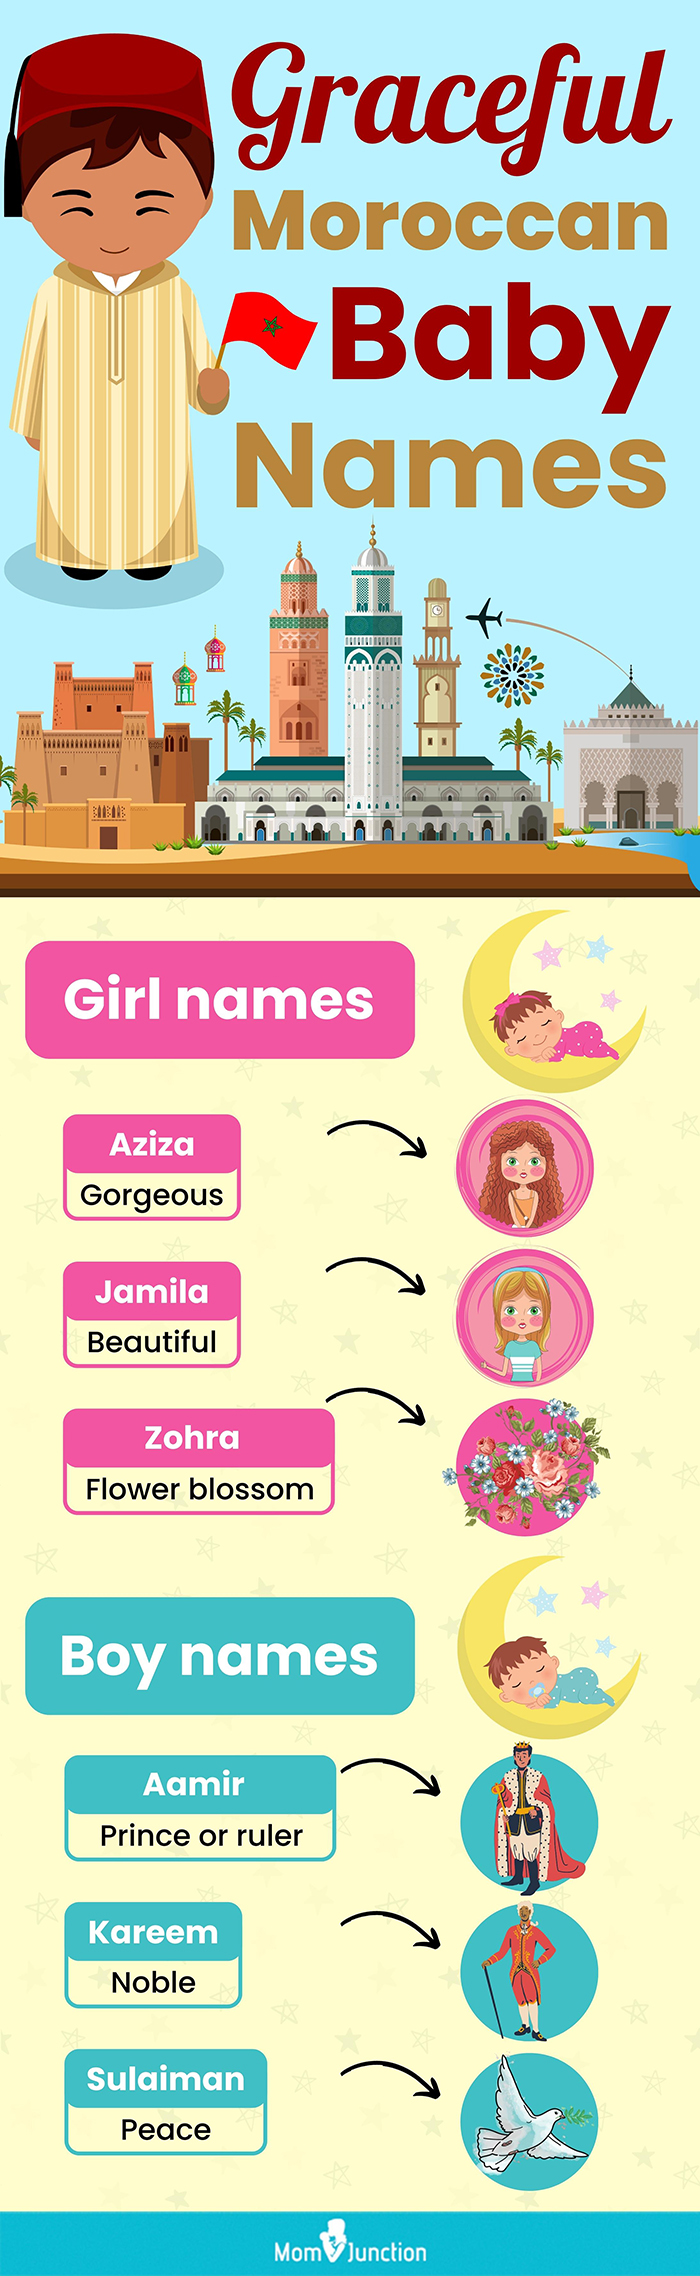 优雅的摩洛哥婴儿名字(信息图)